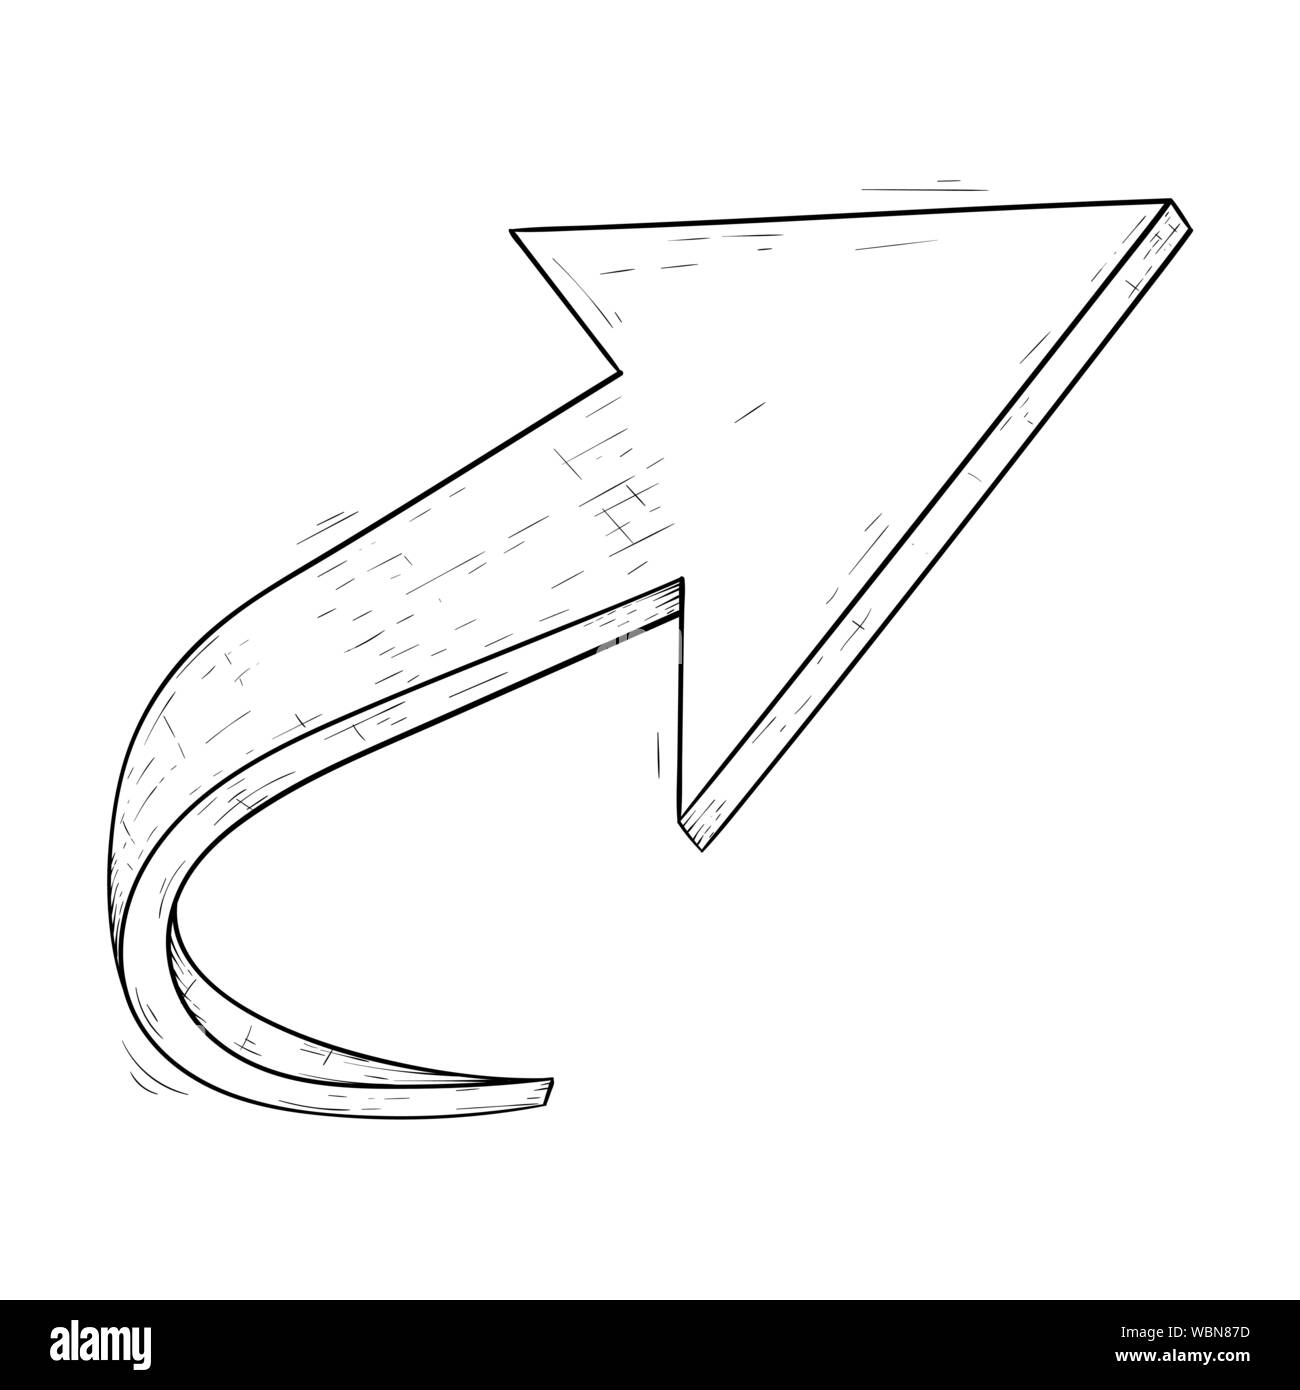 UP hand drawn arrow. Sketch icon Stock Vector